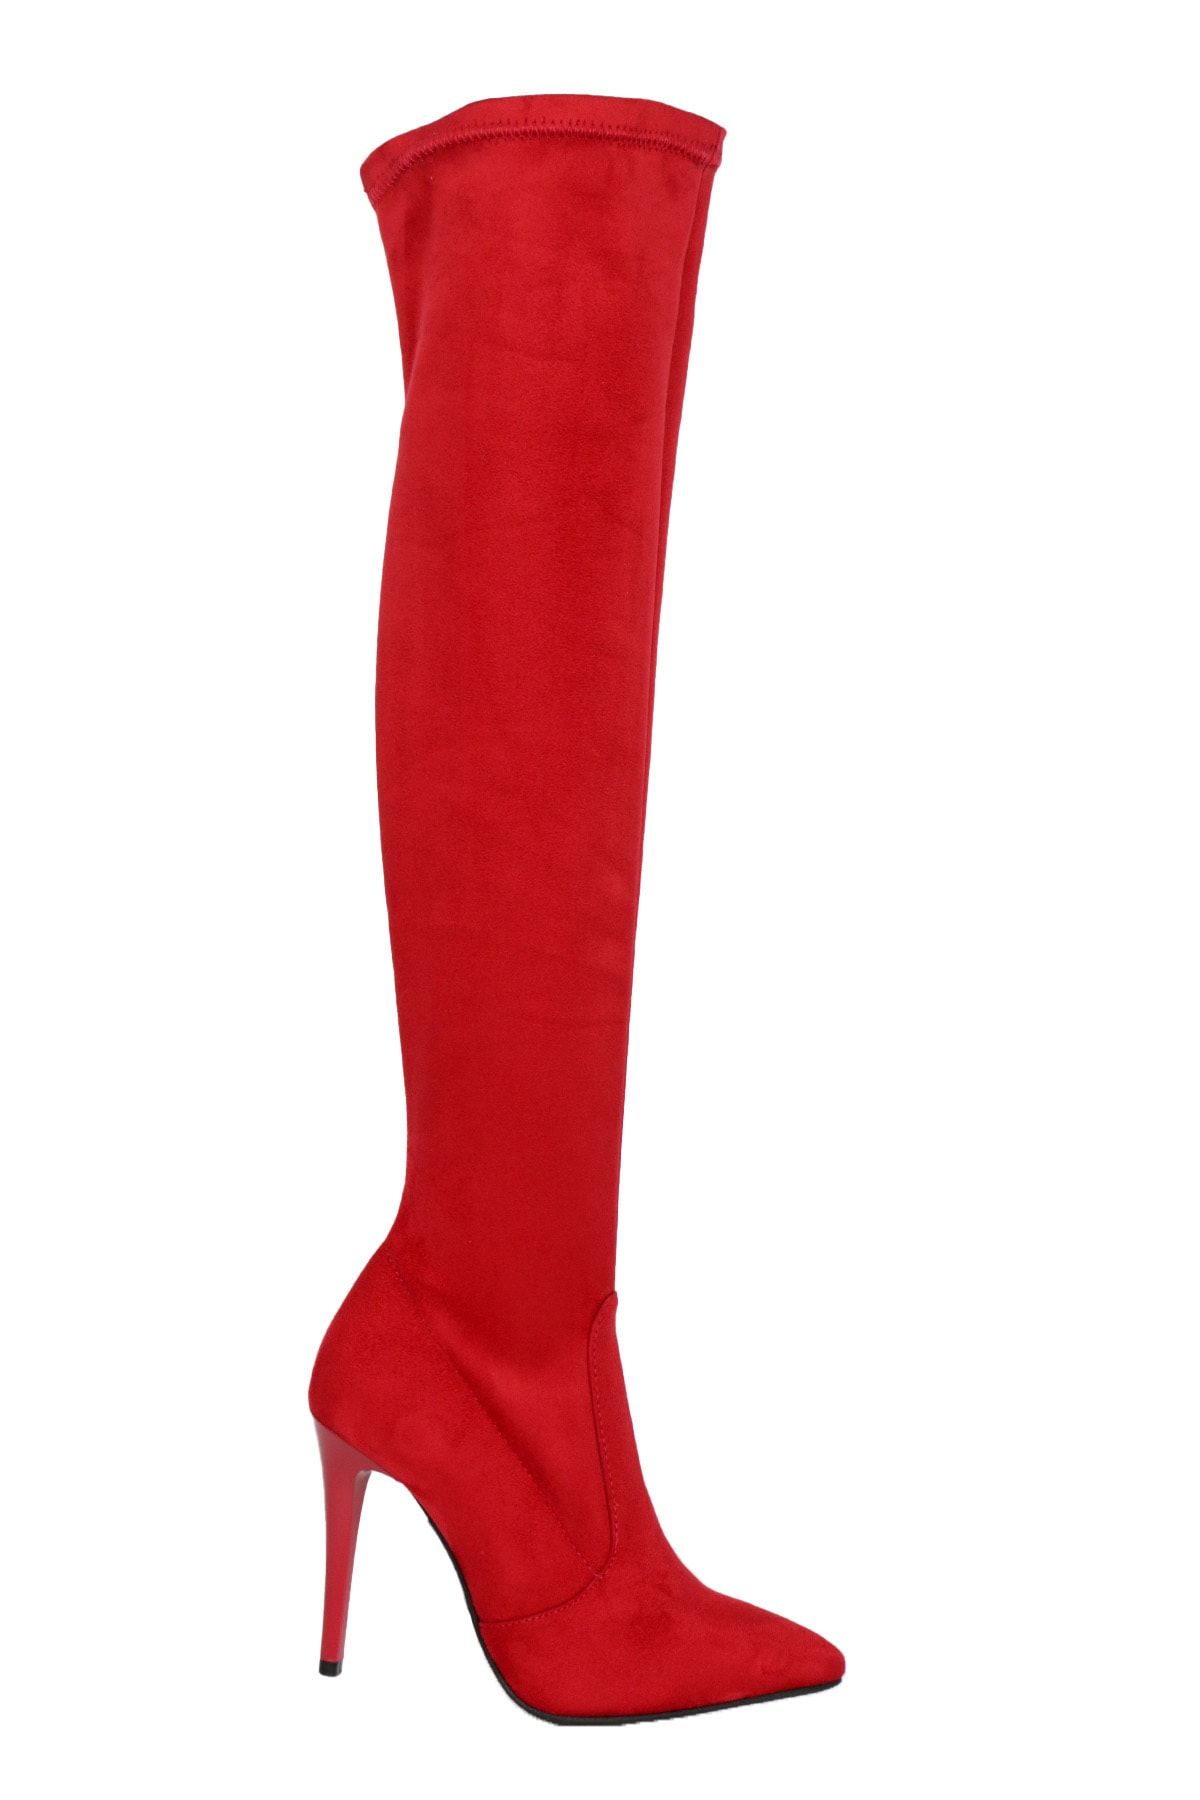 OZ DOROTHY Kadın Kırmızı Süet Streç Diz Üstü Çorap Çizme